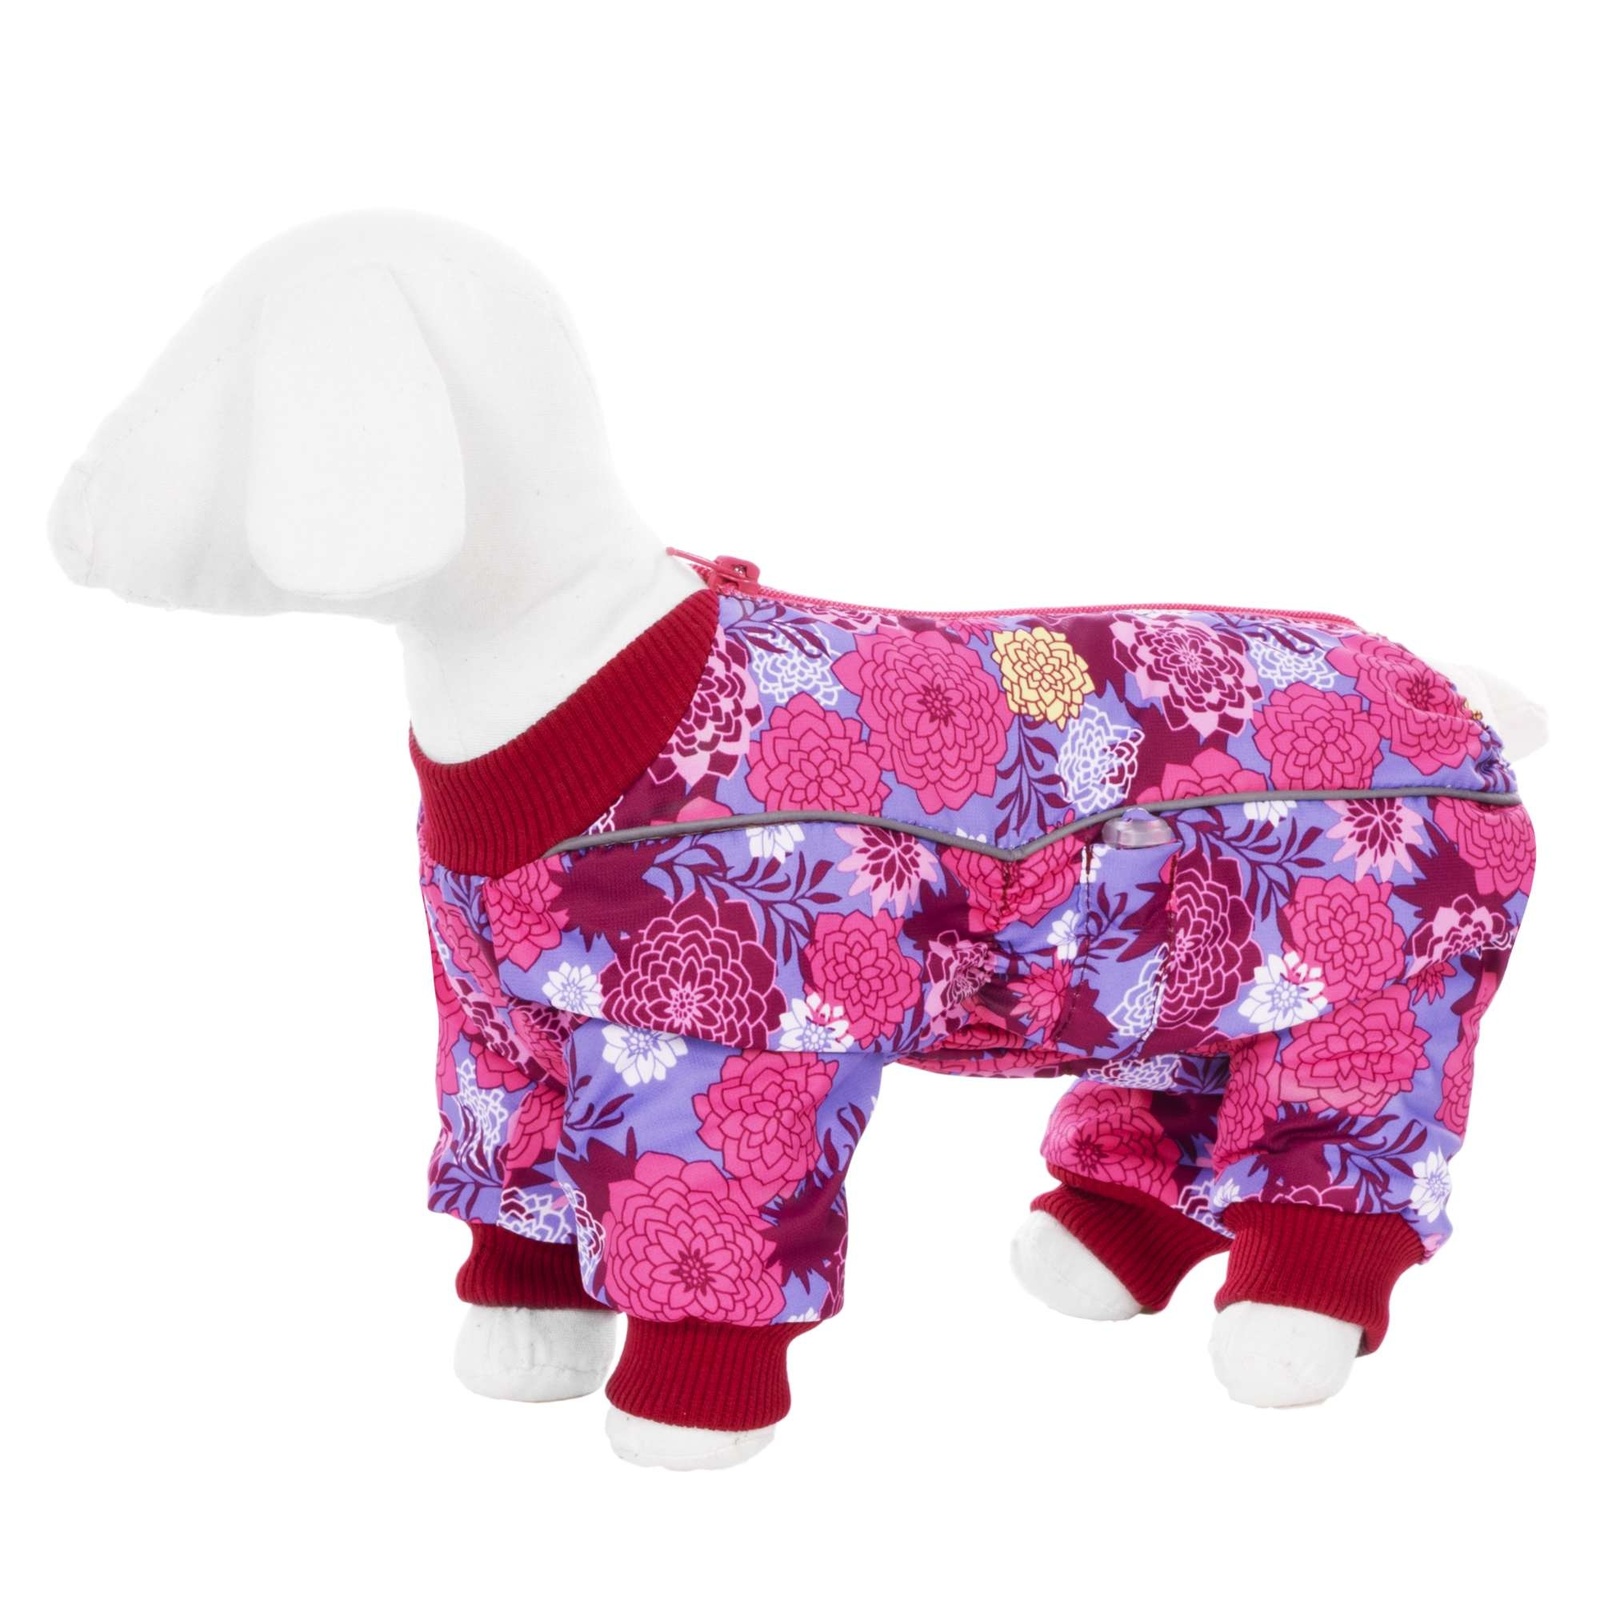 Yami-Yami одежда Yami-Yami одежда комбинезон для собак малых пород, на флисе с рисунком цветы (100 г) yami yami одежда yami yami одежда комбинезон для собак малых пород на меху с рисунком снежинки l